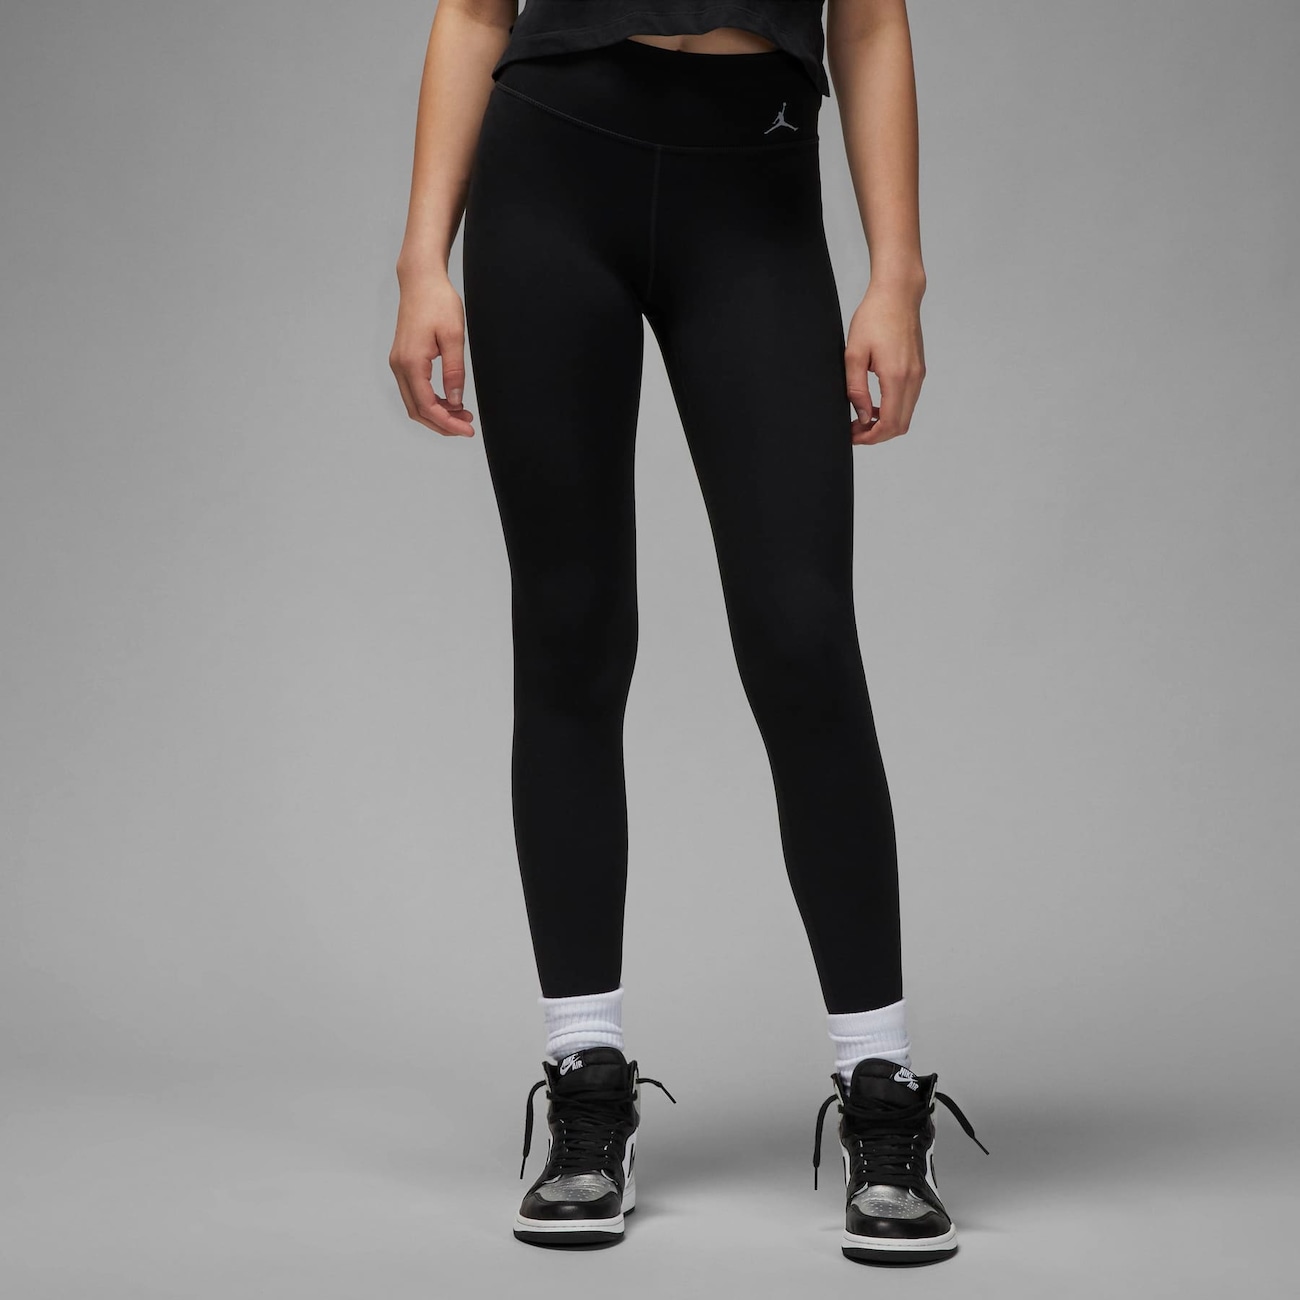 Legging Nike Dri-FIT Epic Fast Feminina - Faz a Boa!